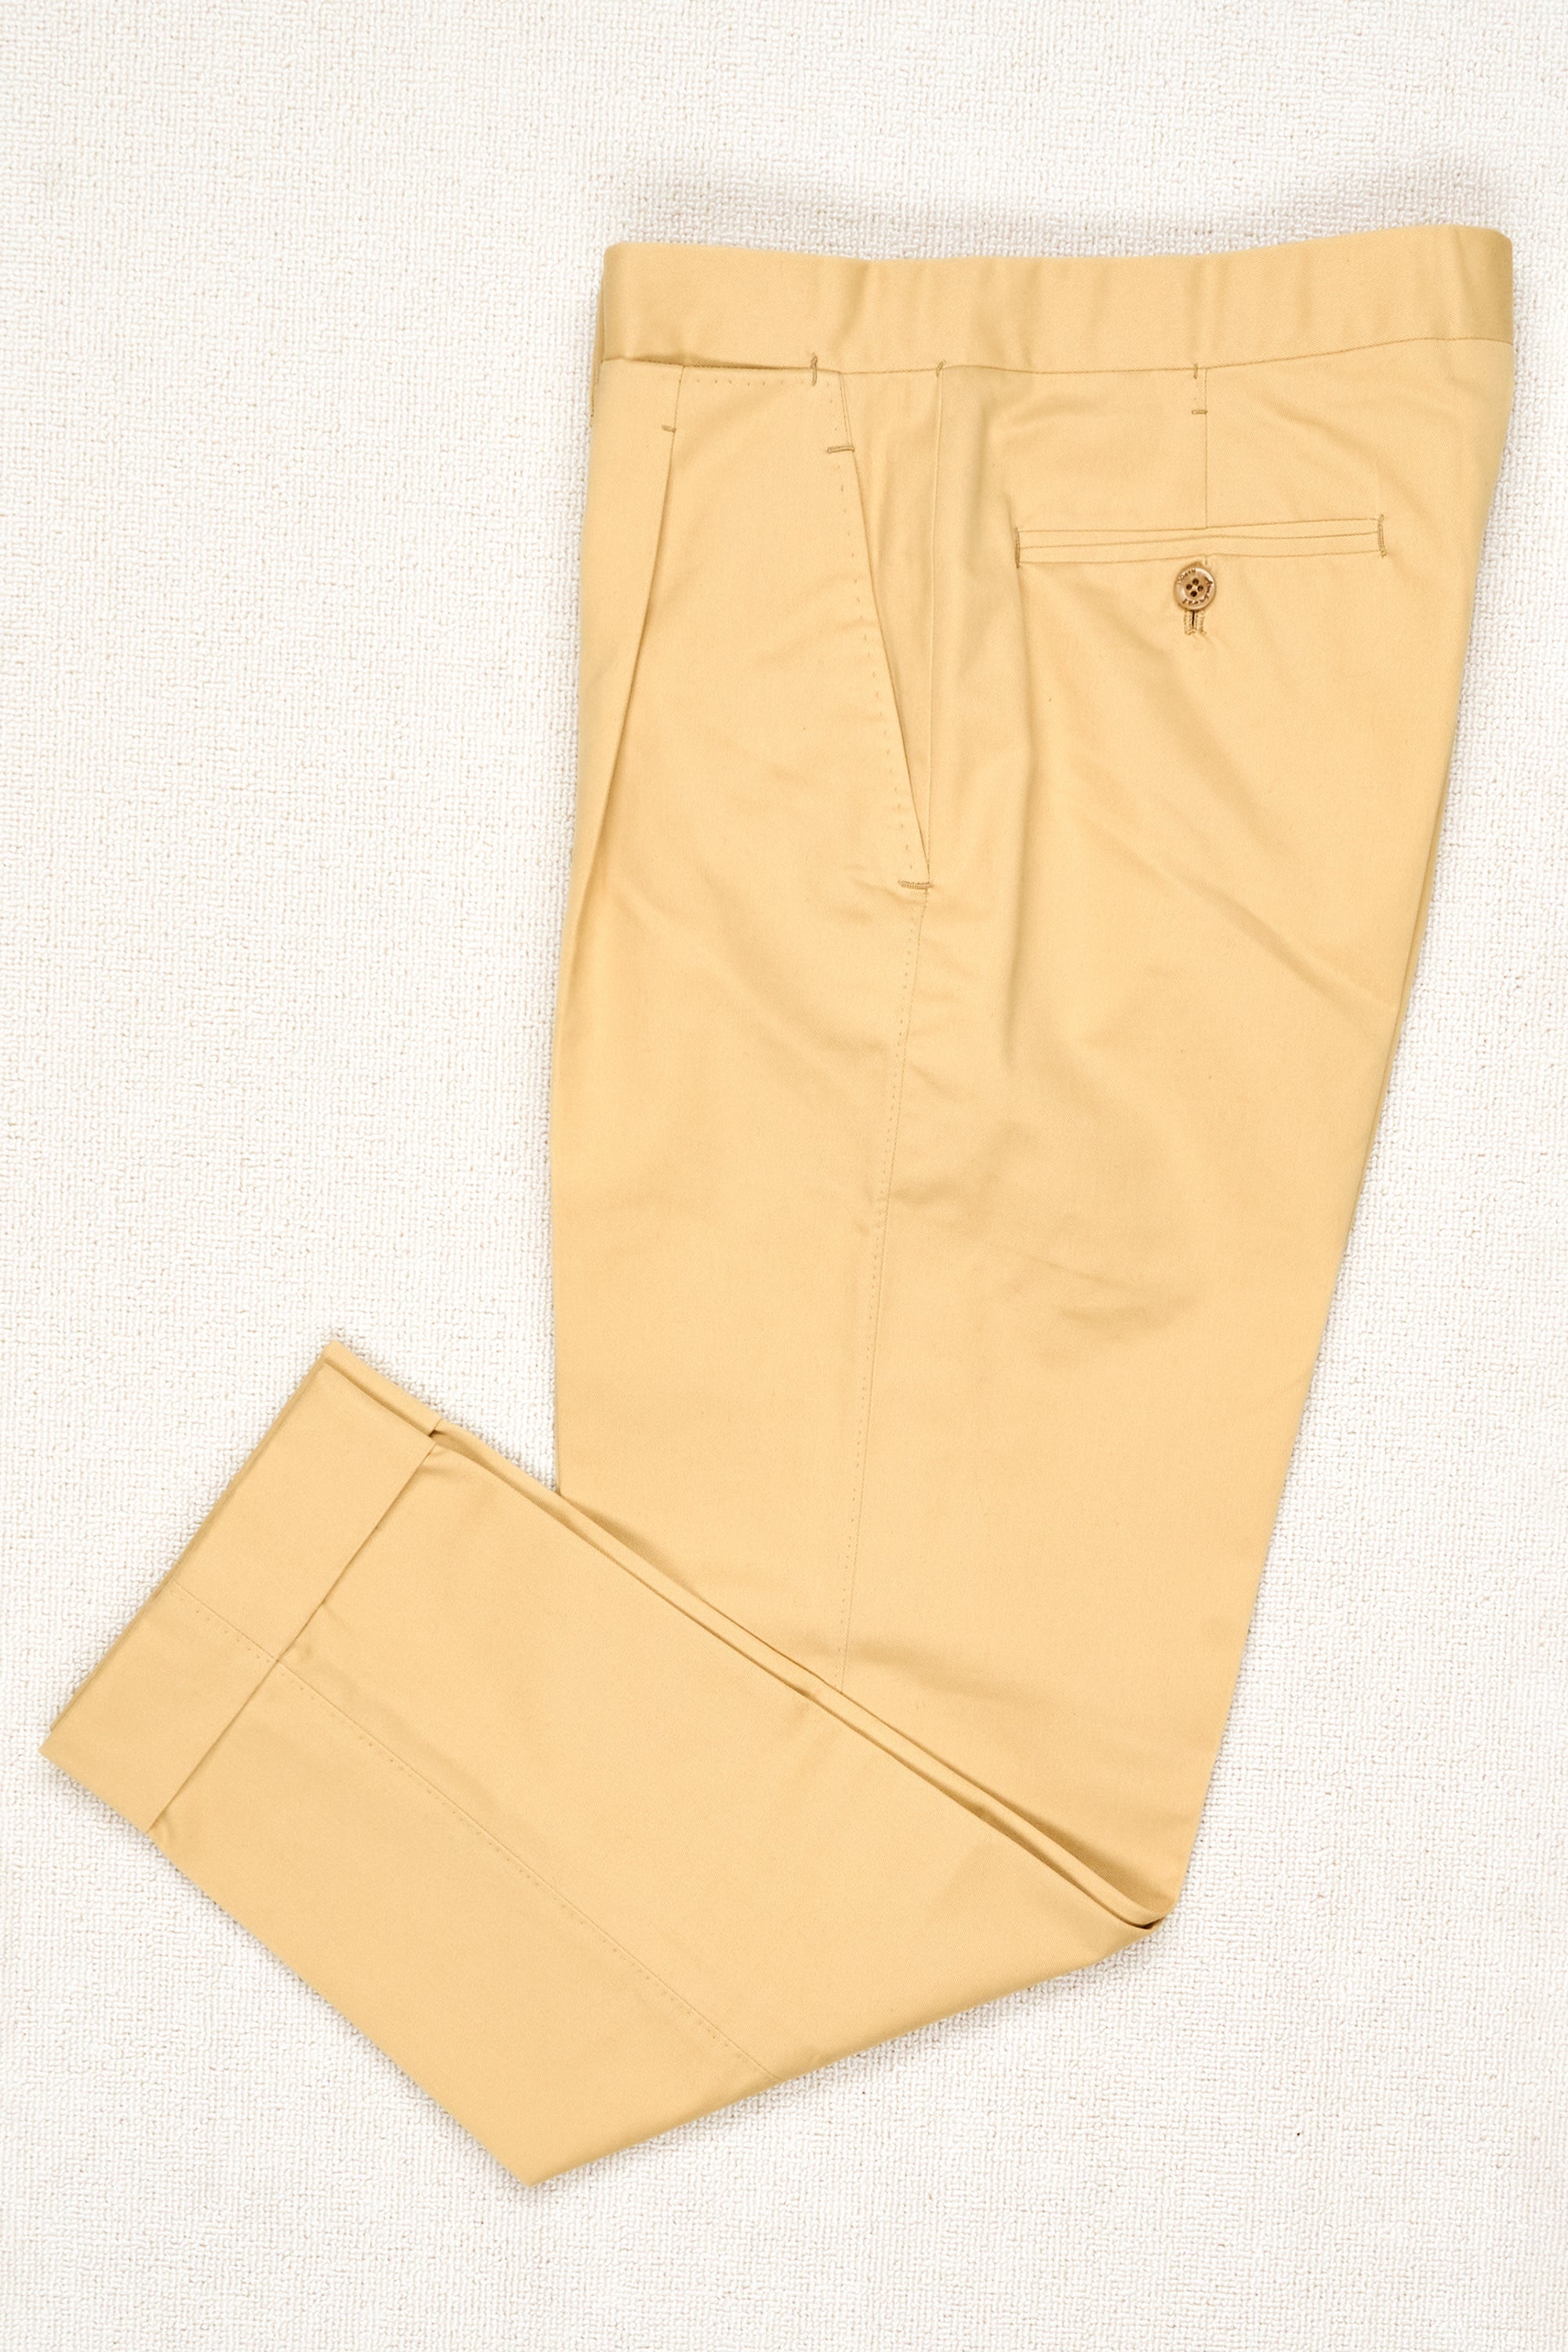 Ambrosi Napoli Yellow Cotton Single-Pleat Trousers Bespoke